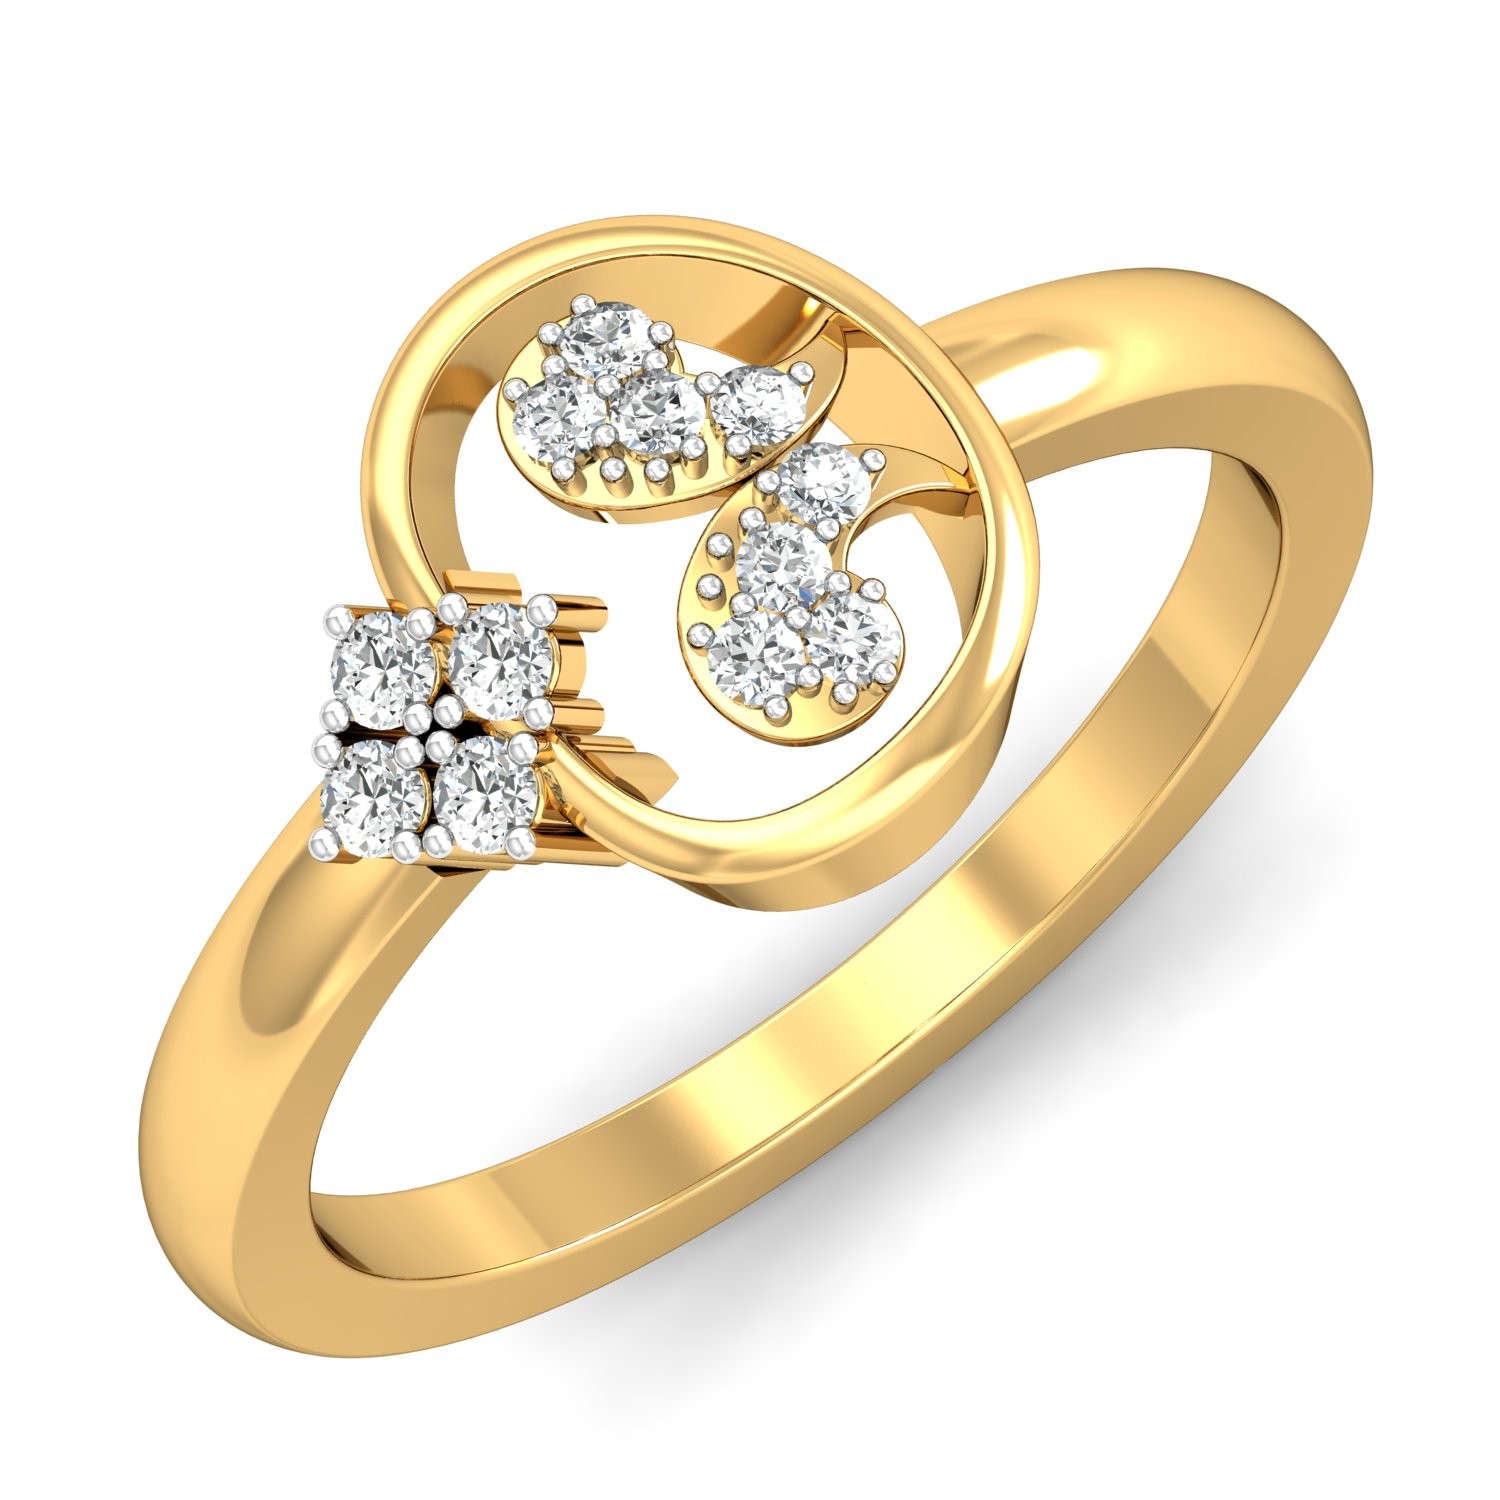 The Parisa Diamond Ring